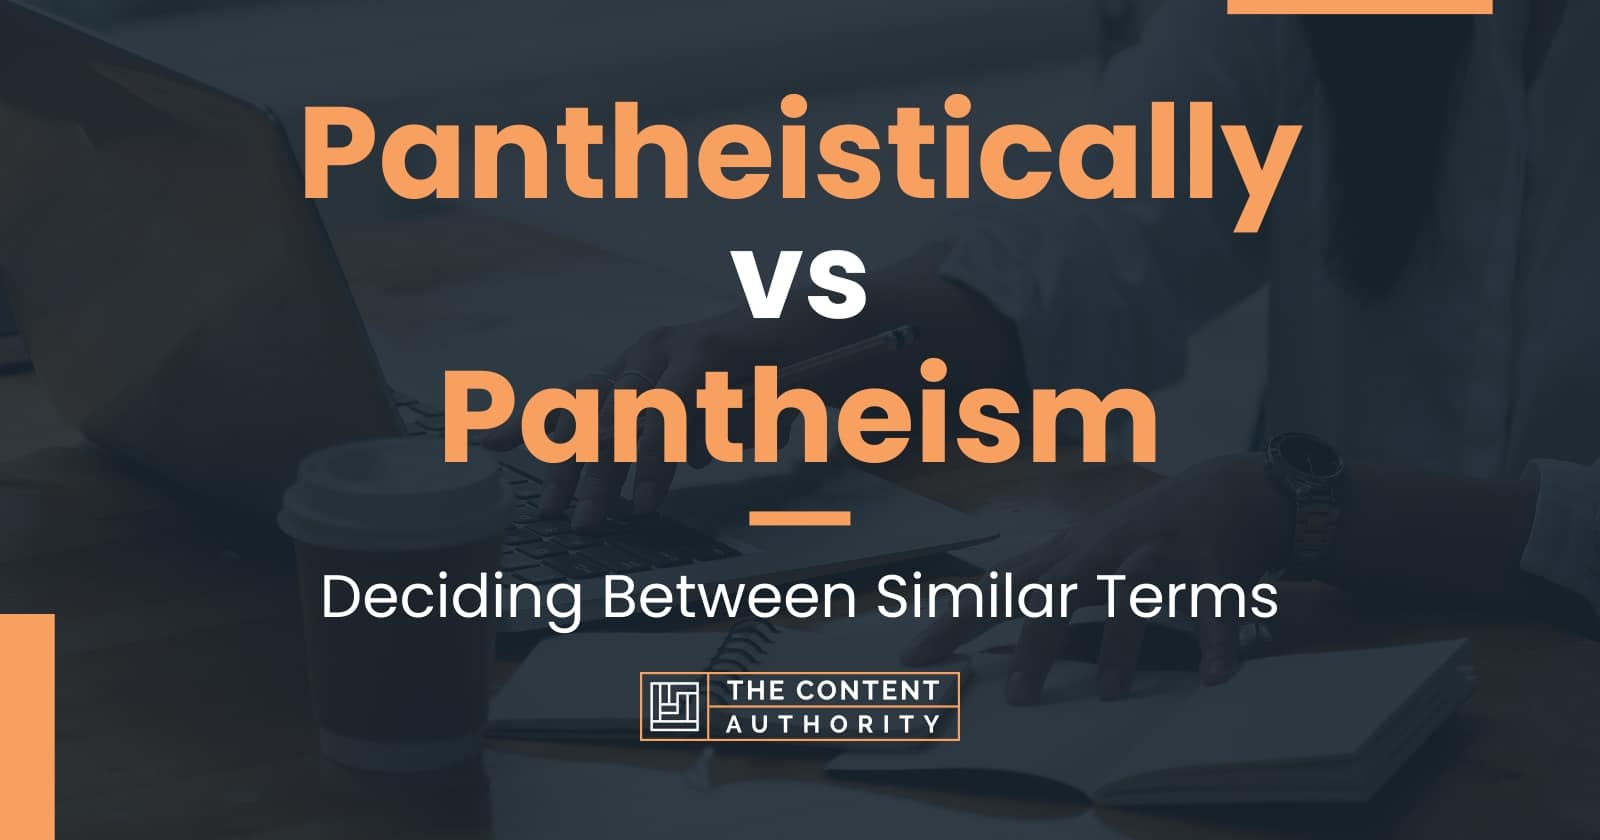 Pantheistically vs Pantheism: Deciding Between Similar Terms